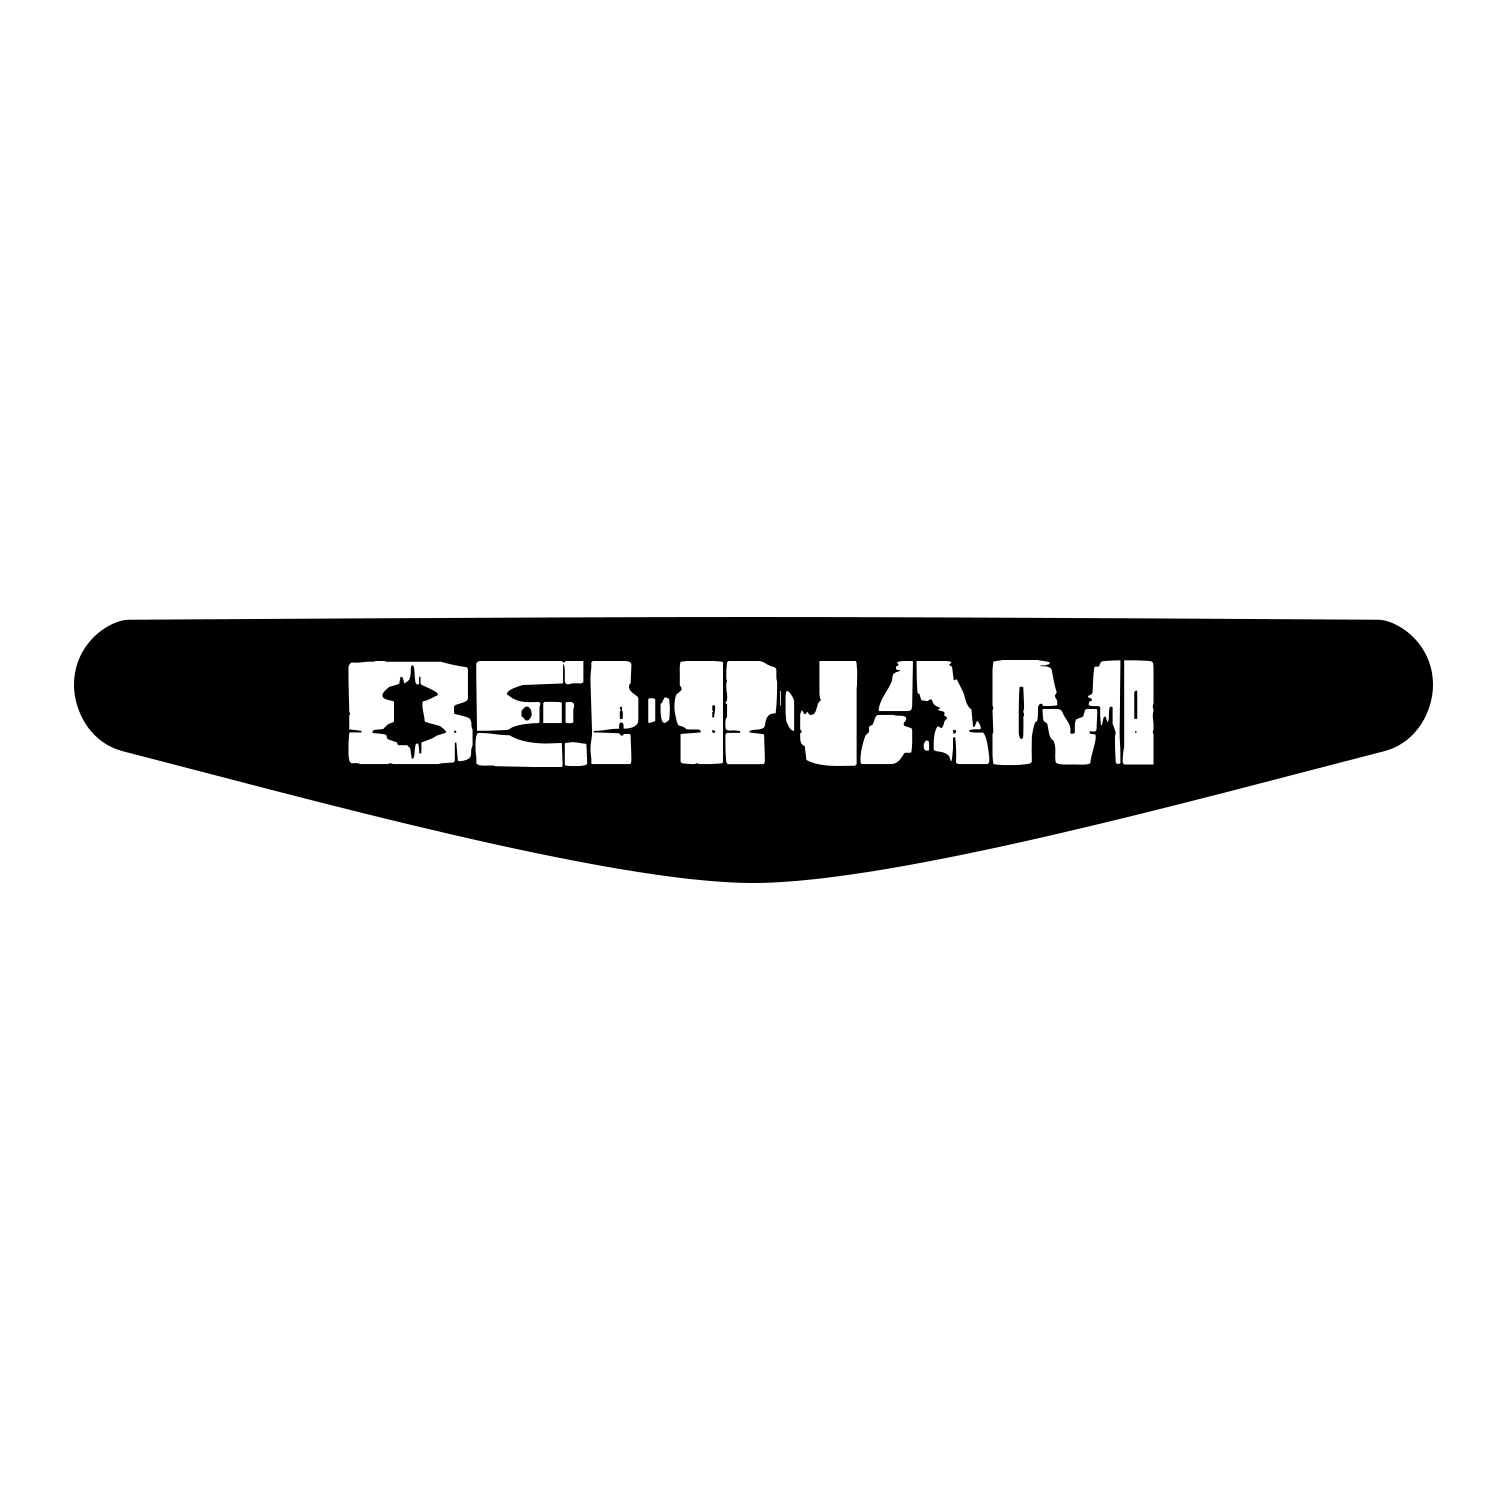 برچسب لایت بار دسته پلی استیشن 4 ونسونی طرح BEHNAM